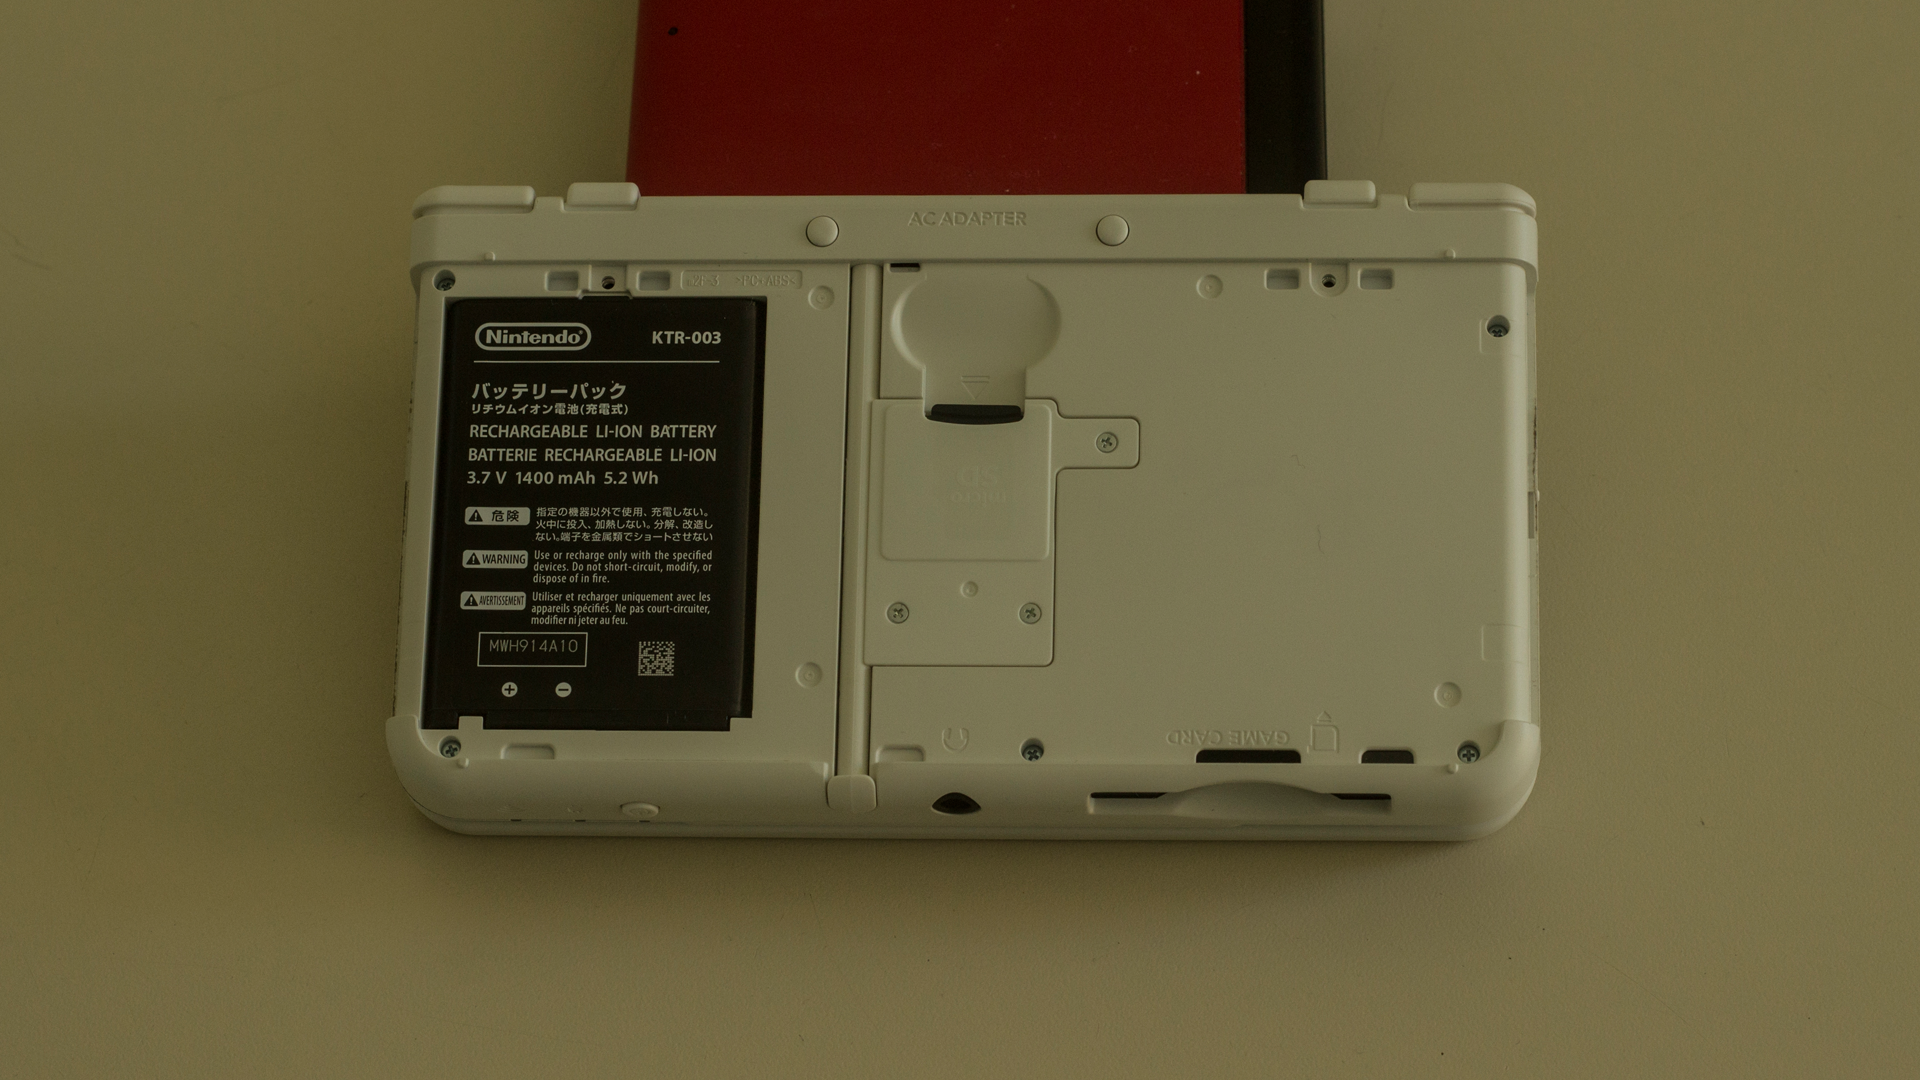 «Железный» обзор: New Nintendo 3DS - еще одна попытка